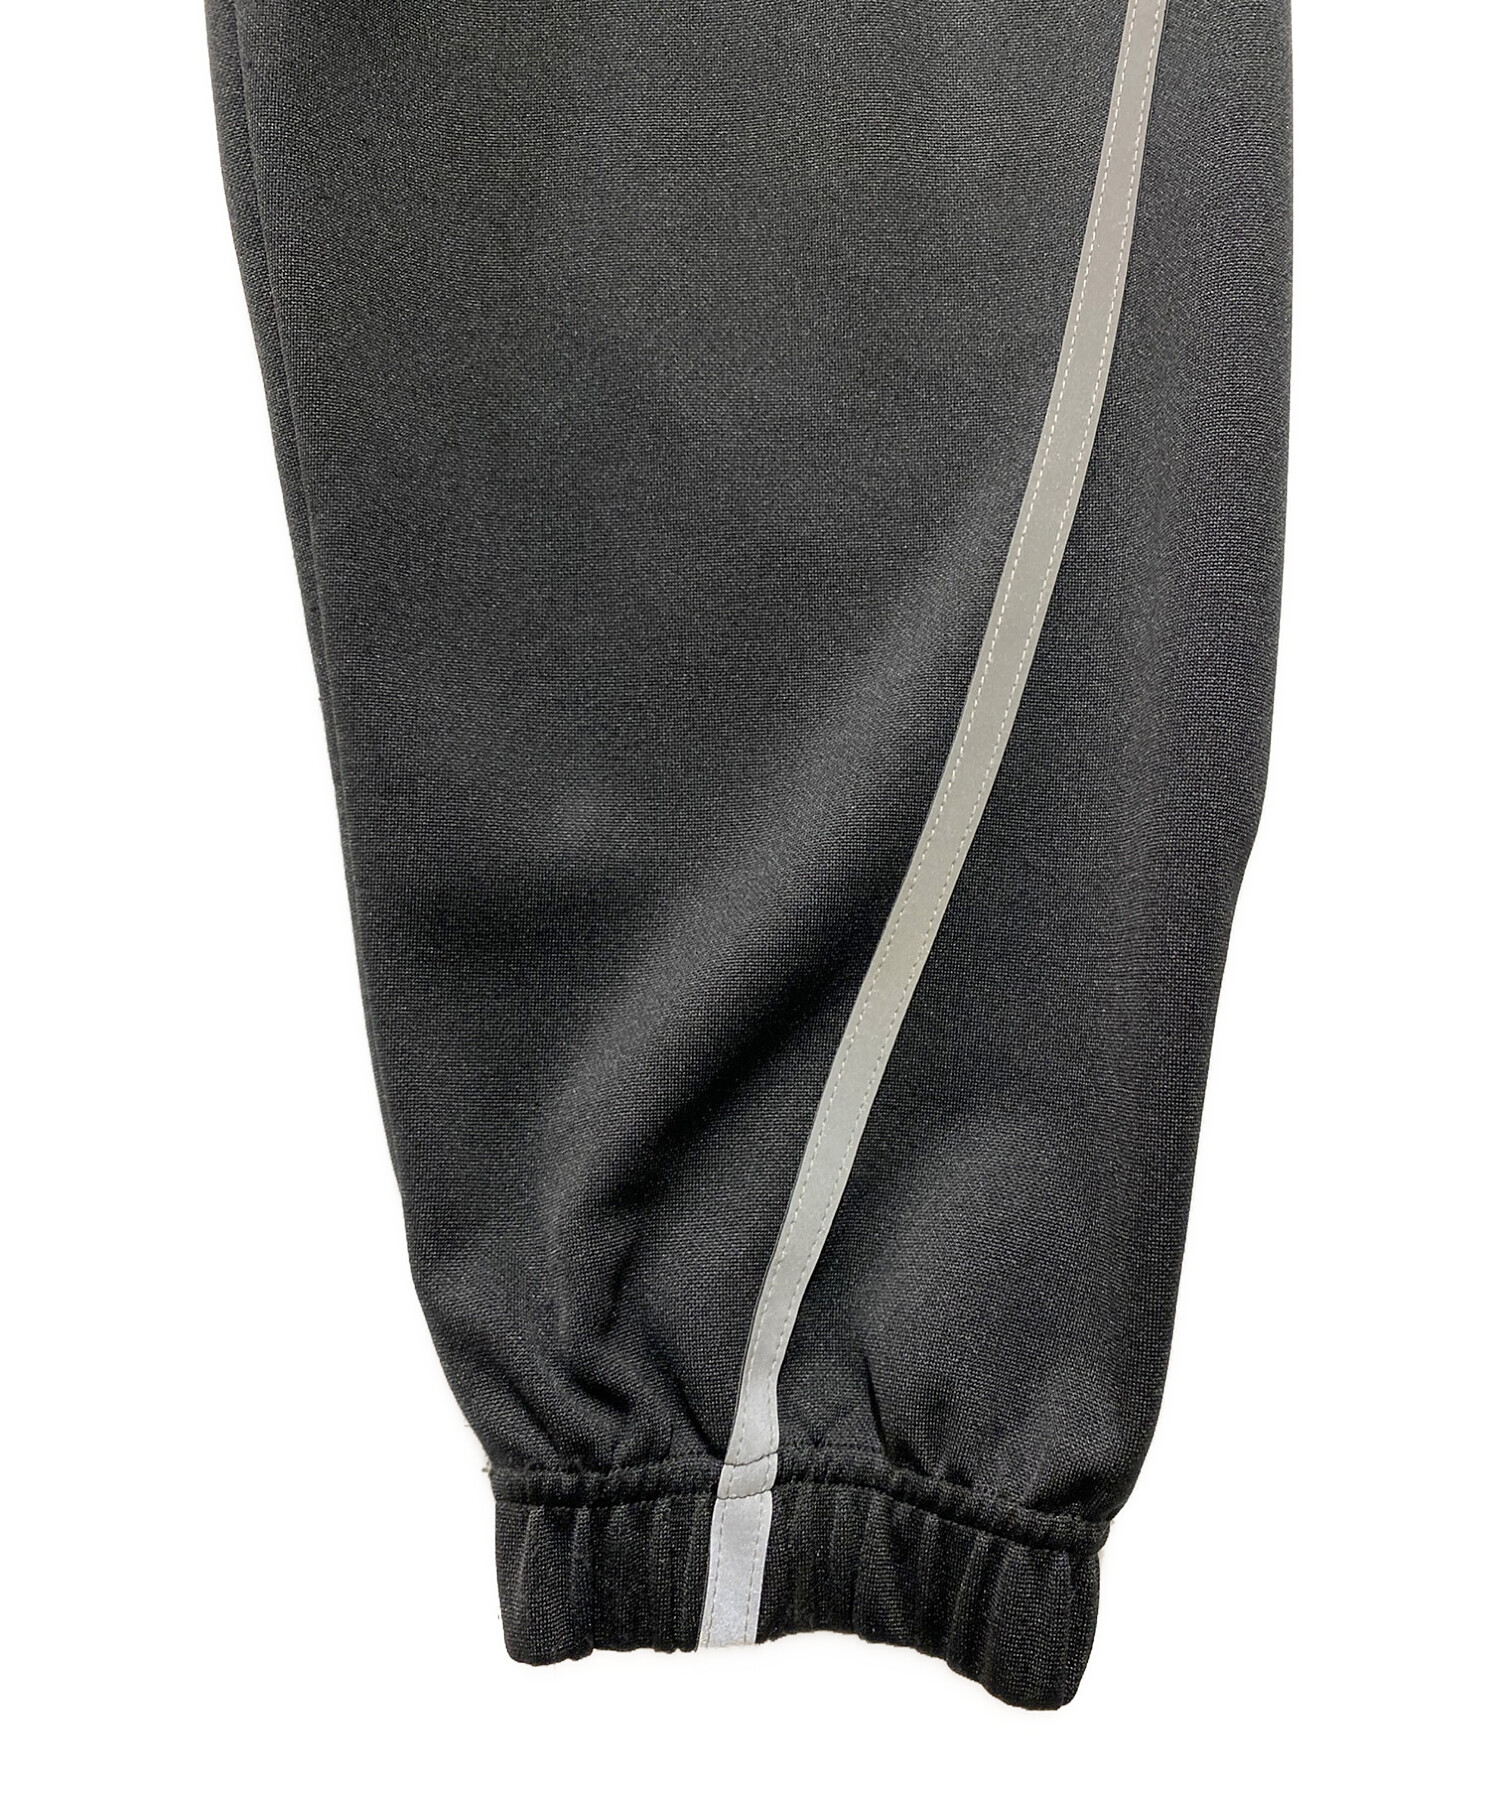 ballaholic (ボーラホリック) Logo Jersey Pants ブラック サイズ:М